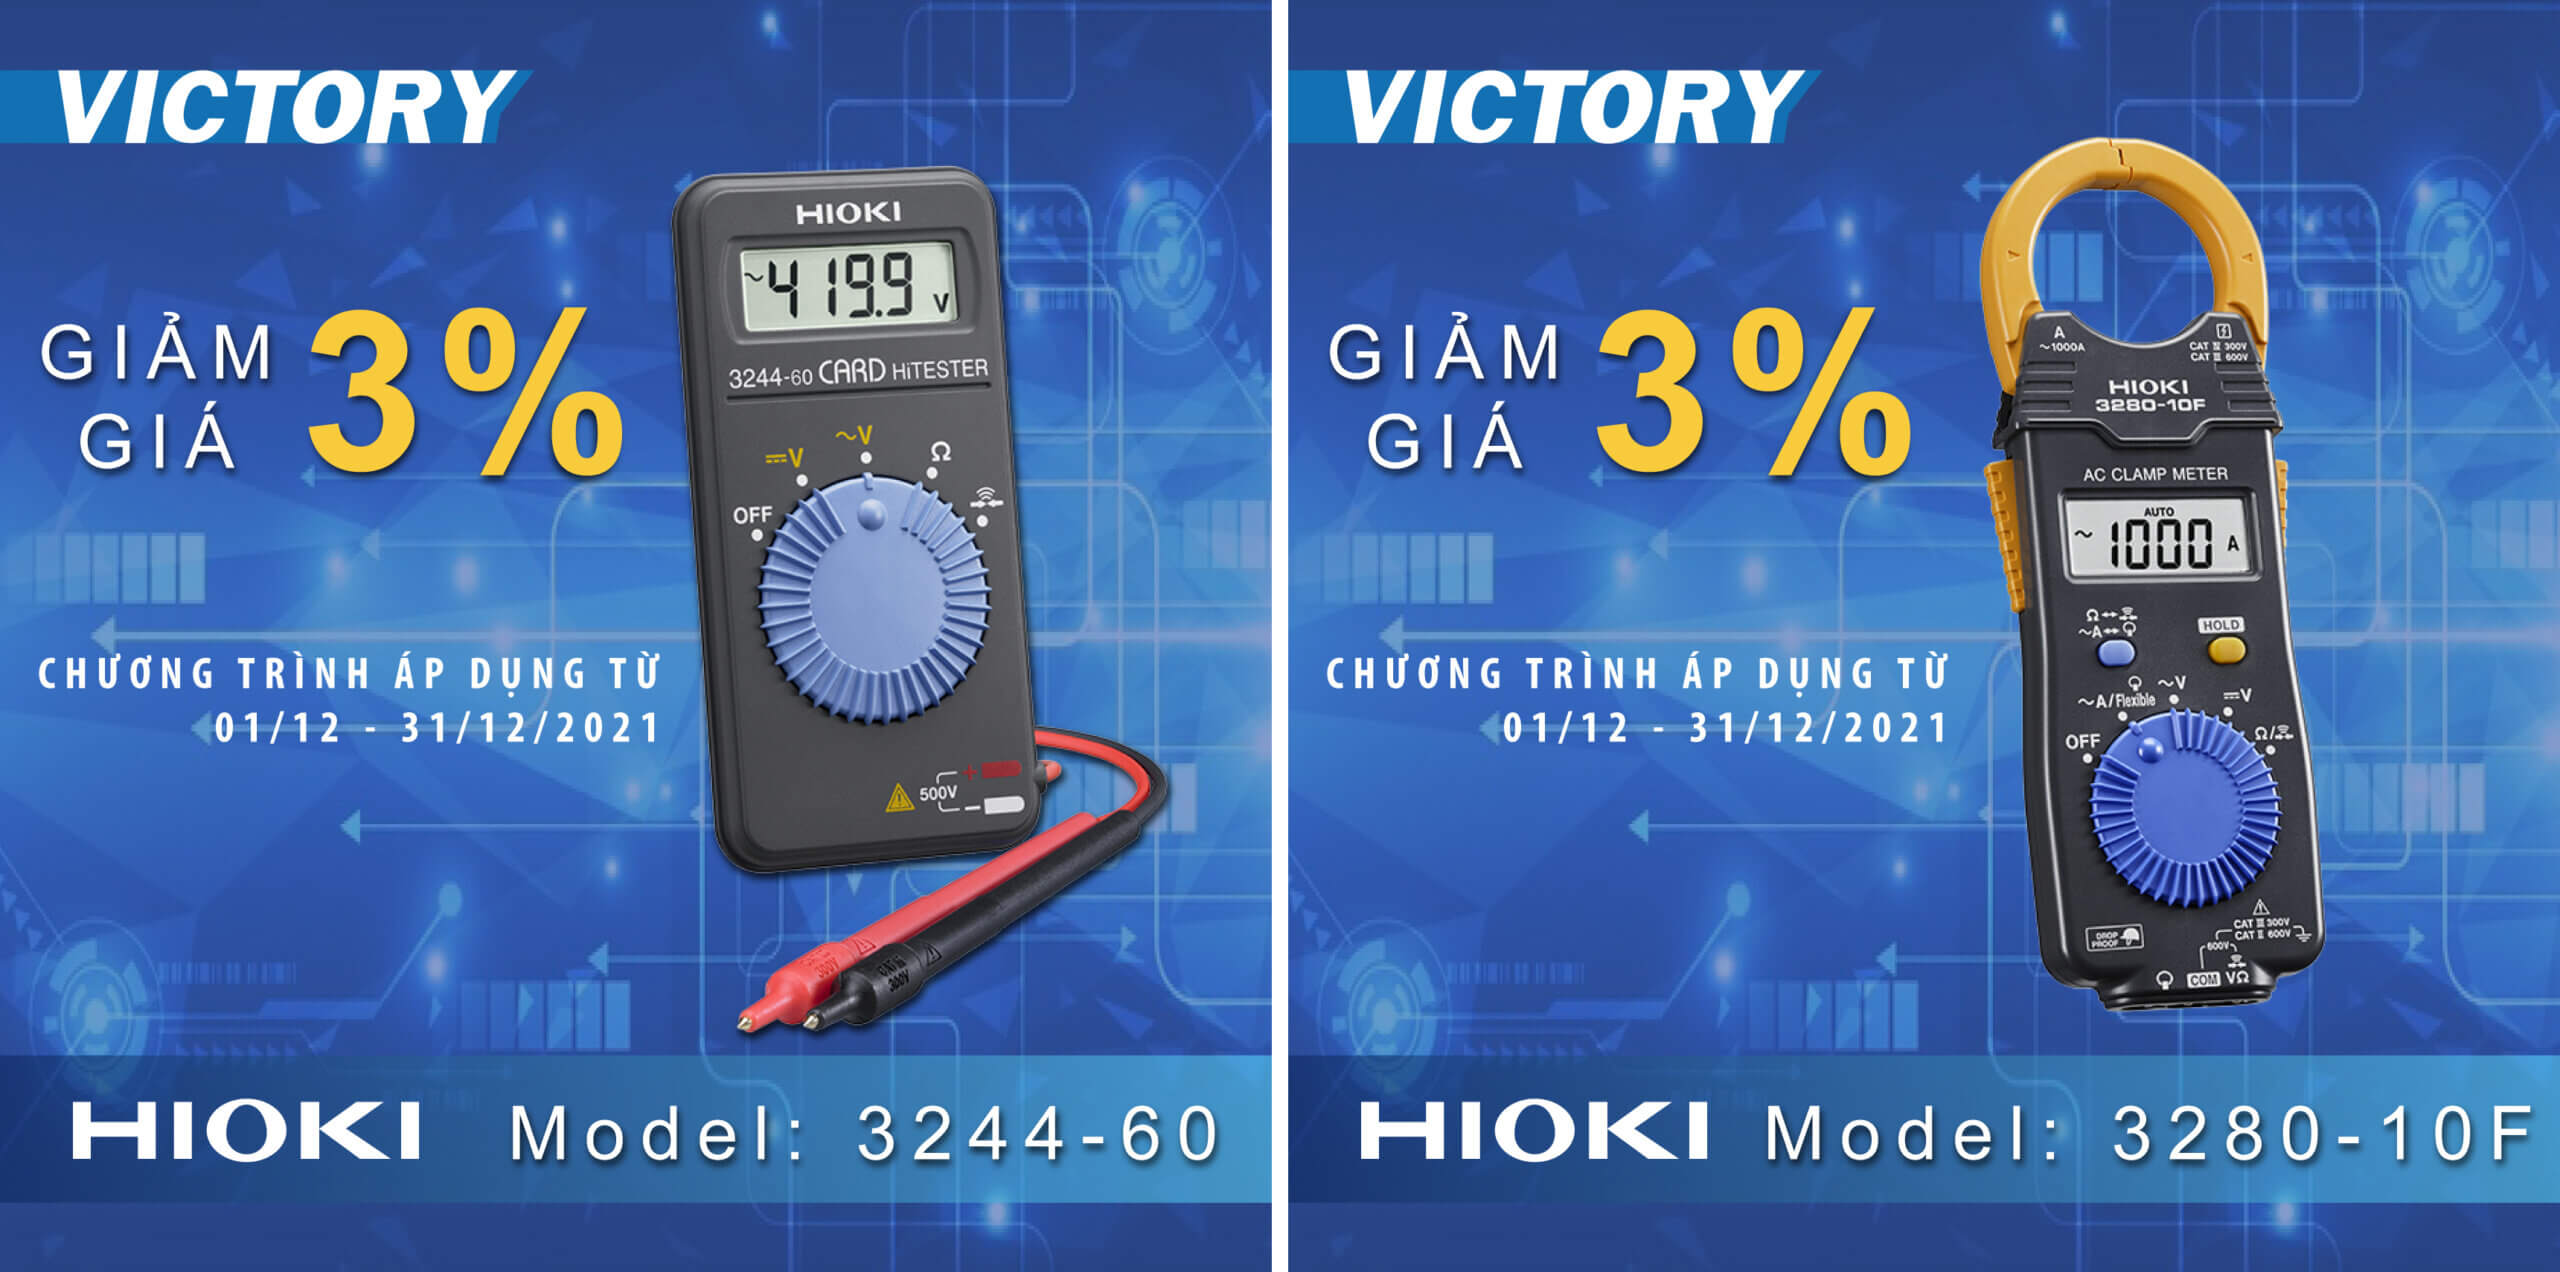 Hioki thang 12 scaled - Tháng 12 ngập tràn ưu đãi khi mua thiết bị HIOKI